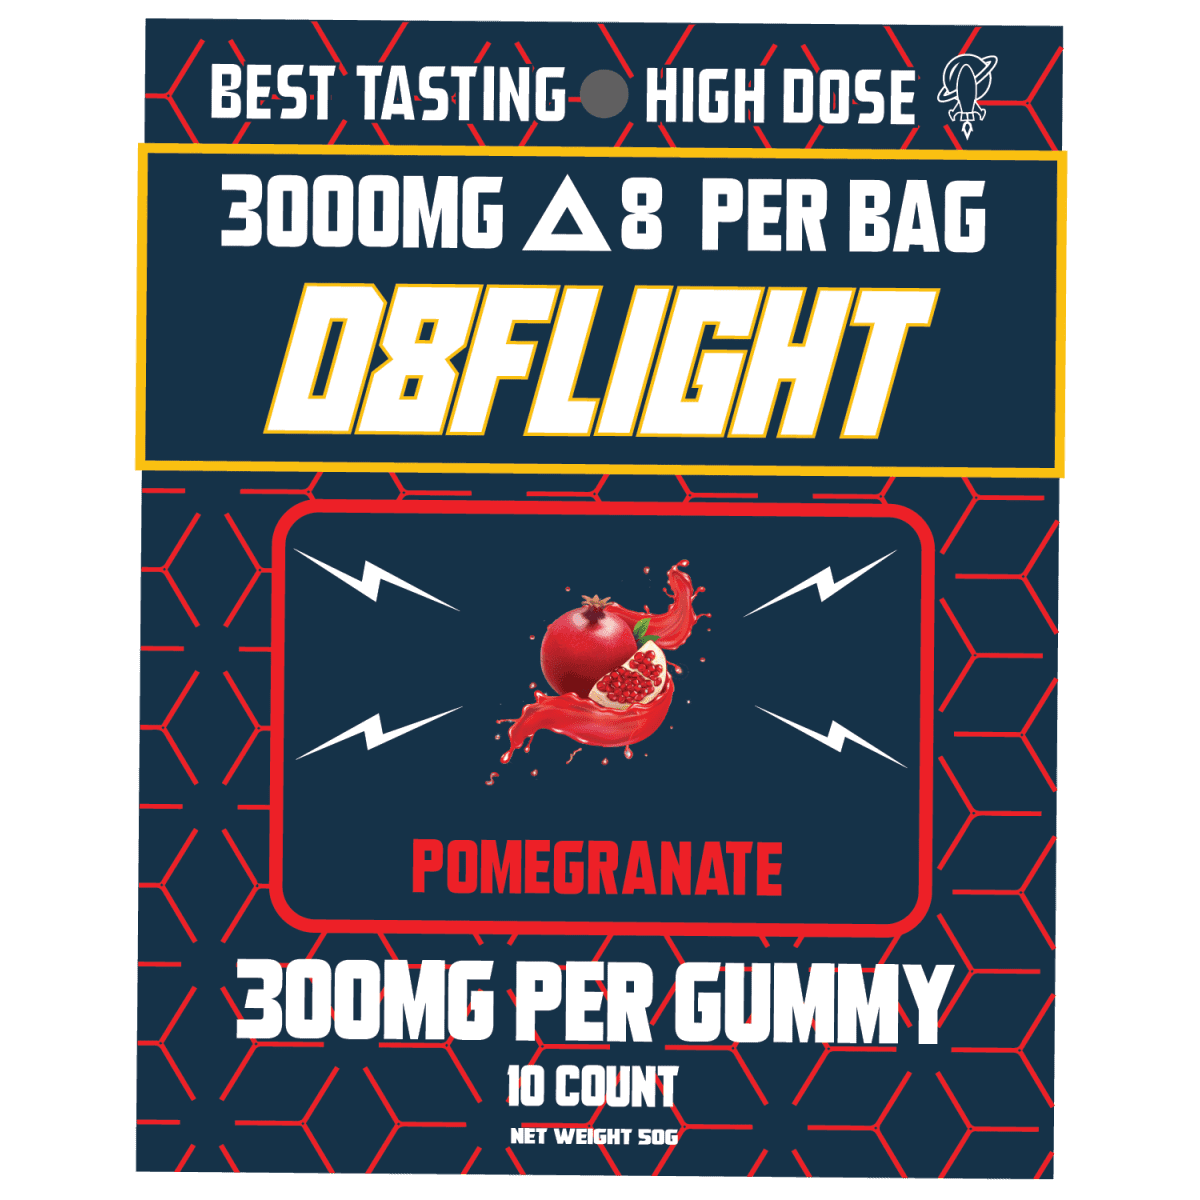 D8flight high dose 300mg d8 pomegranate gummy